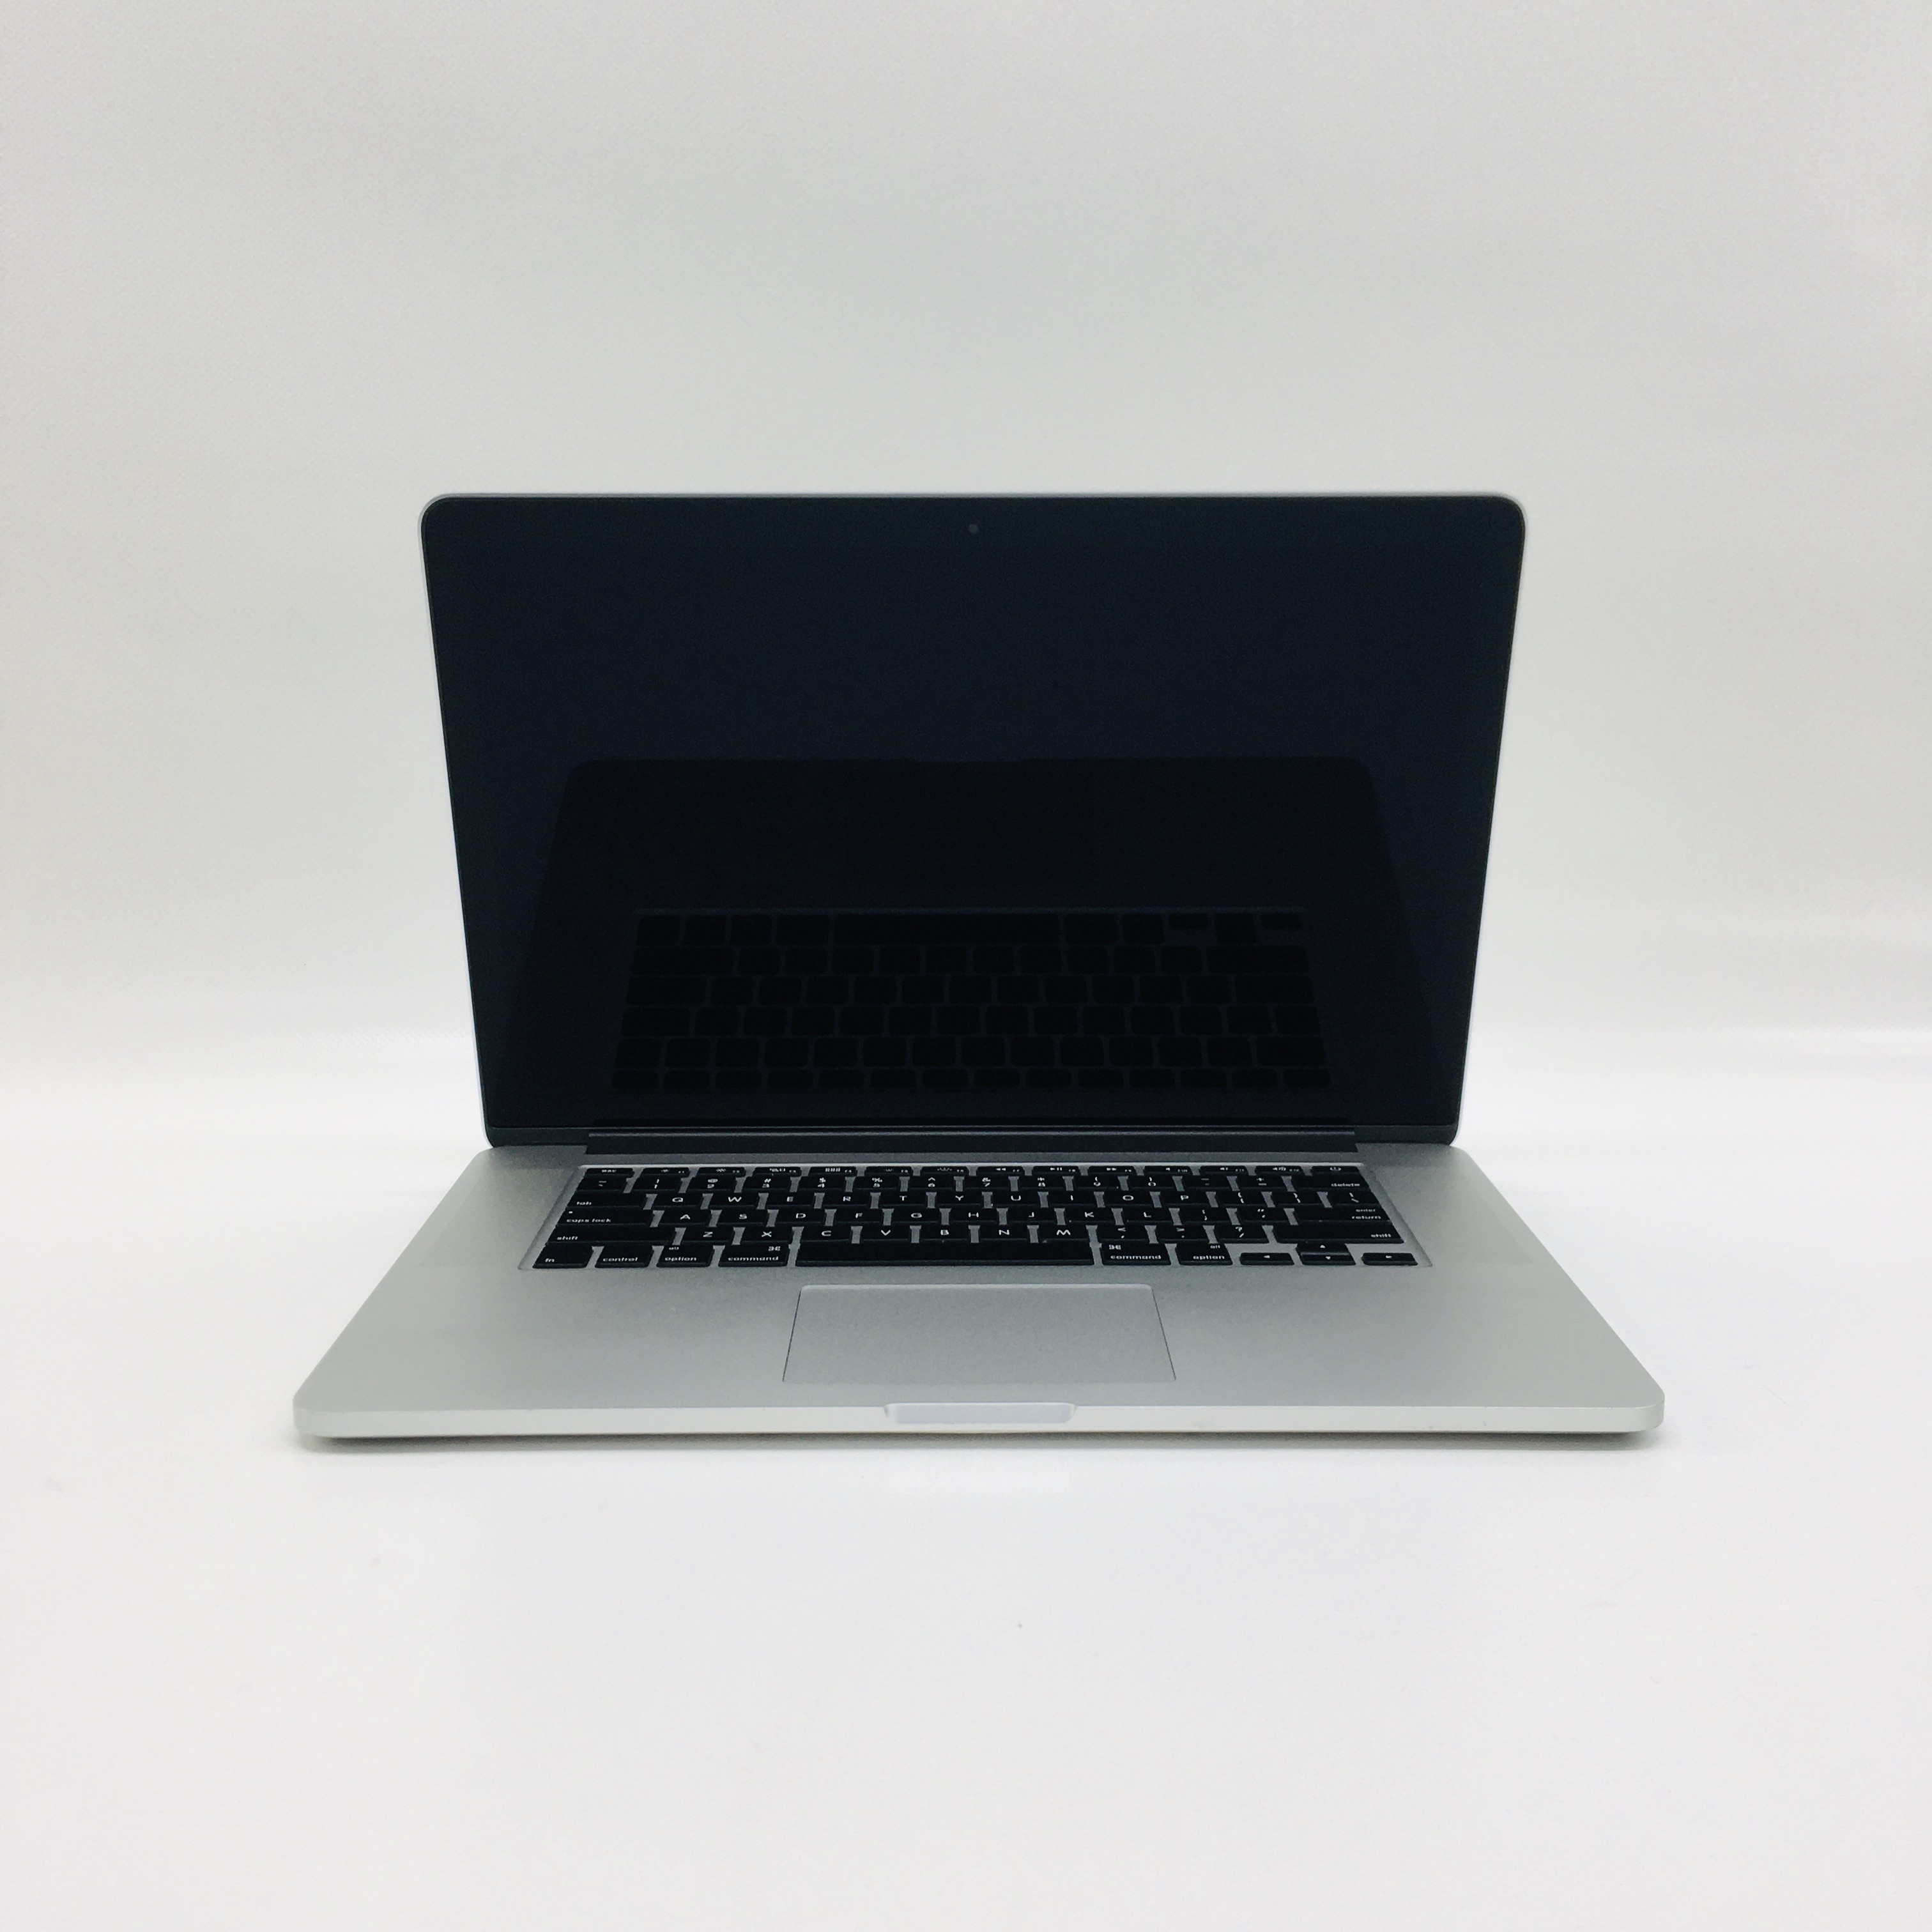 MacBook Pro Retina 15" Mid 2015 (Intel Quad-Core i7 2.5 GHz 16 GB RAM 512 GB SSD), Intel Quad-Core i7 2.5 GHz, 16 GB RAM, 512 GB SSD, image 1